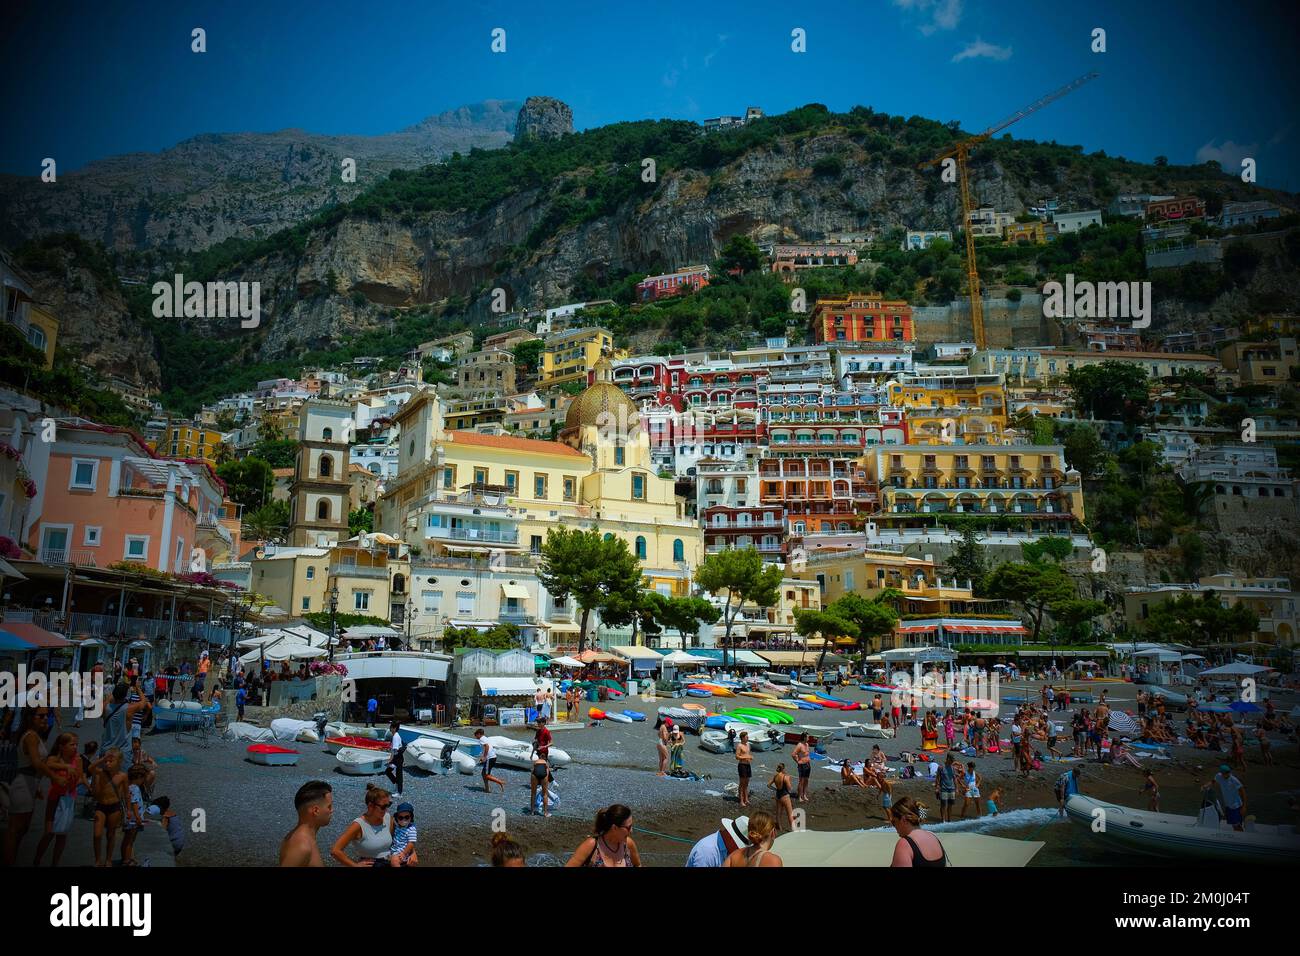 Las coloridas casas, tiendas y hoteles de Positano se superponían verticalmente en los acantilados con vistas a la playa Marina grande de Italia. Foto de stock